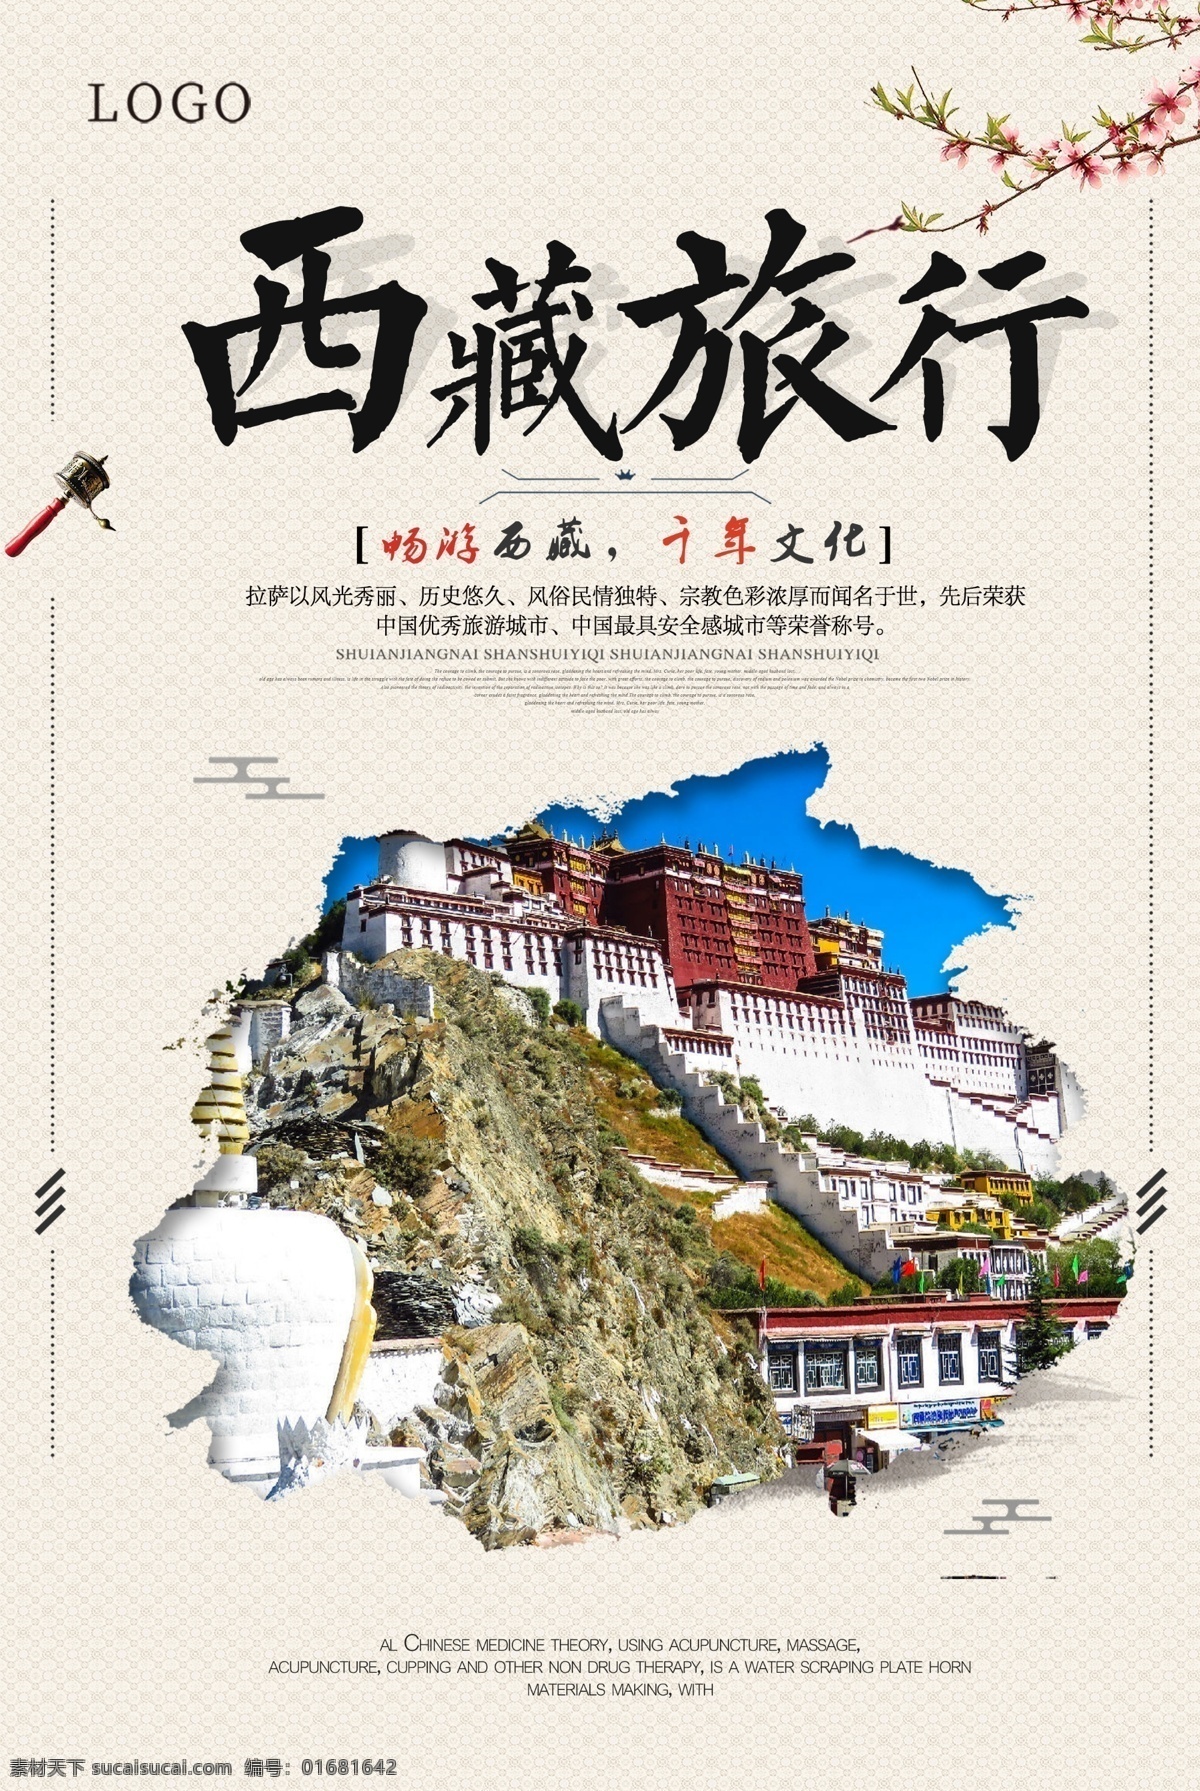 简约 文艺 风格 西藏旅游 海报 海报模板 免费 西藏 平面素材 免费海报设计 免费海报模板 文艺风格海报 清新 大气 简约风格 文艺风格